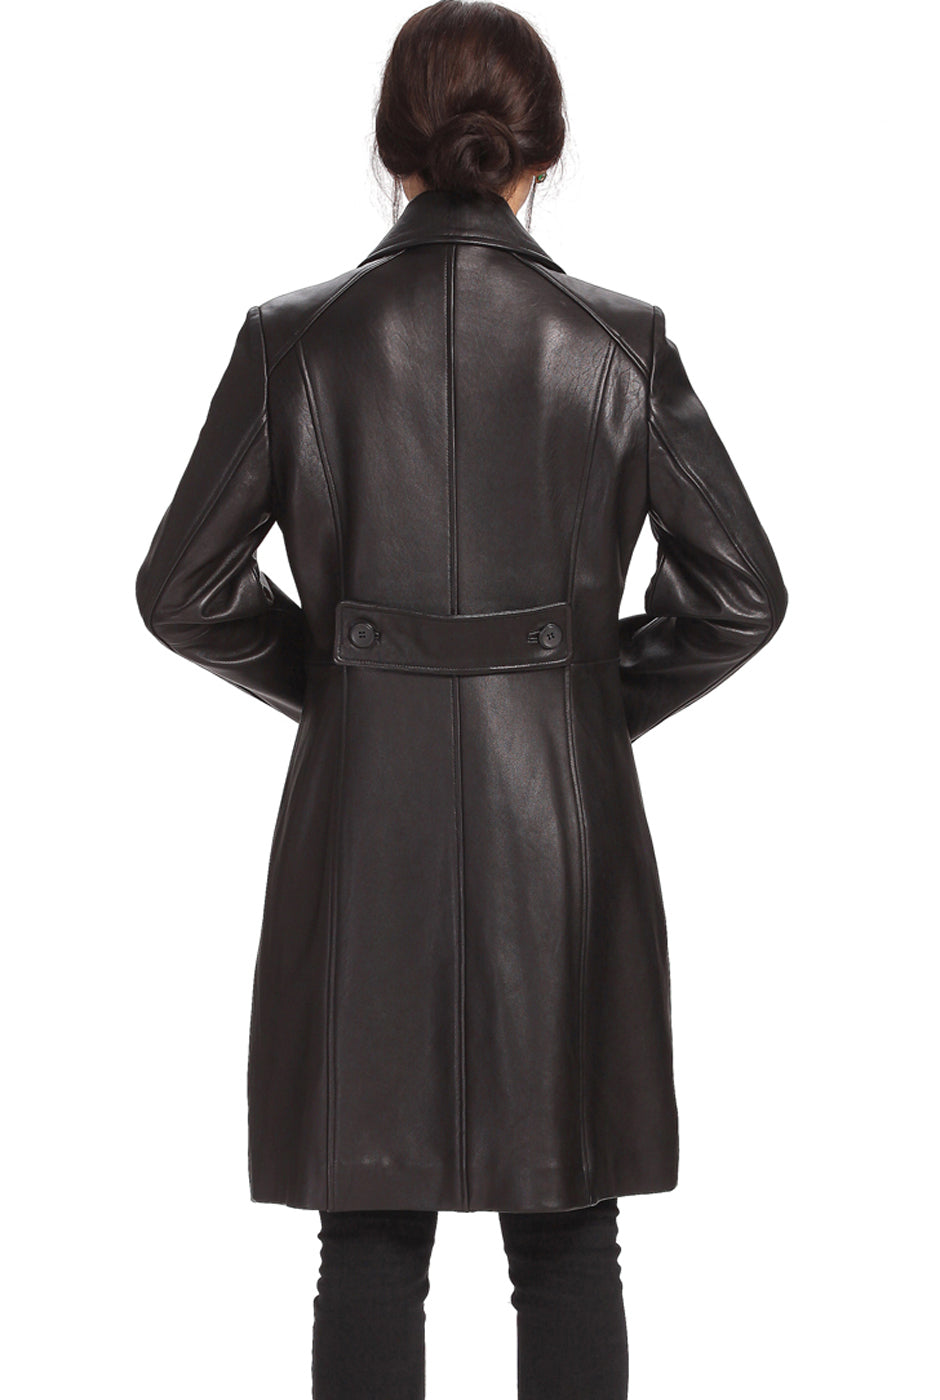 BGSD Women Amber Lambskin Leather Walking Coat